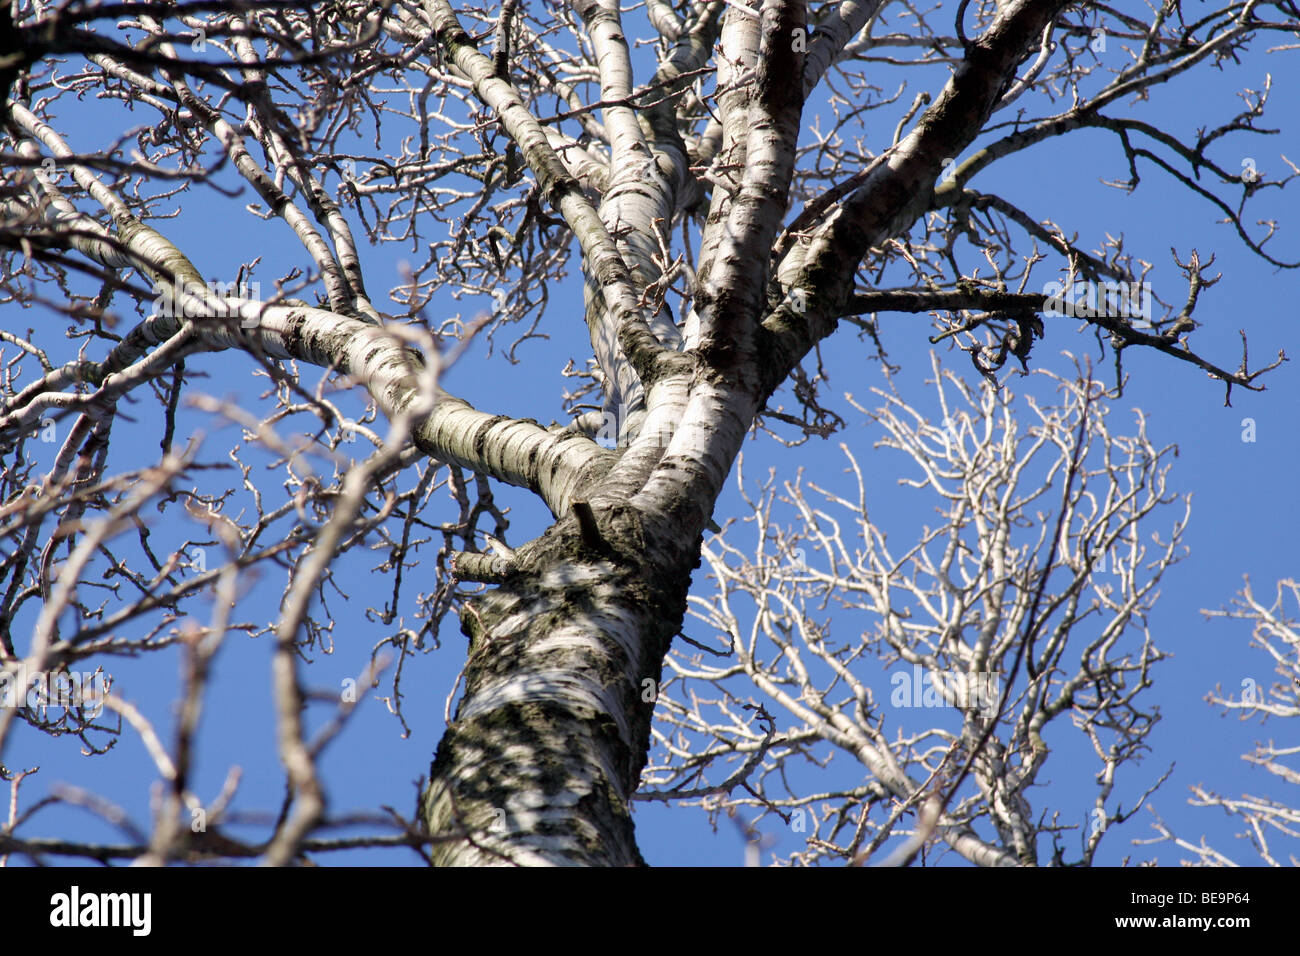 Arbre bouleau verruqueux (Betula pendula) et bleu ciel. Angleterre, Royaume-Uni. L'hiver (février) Banque D'Images